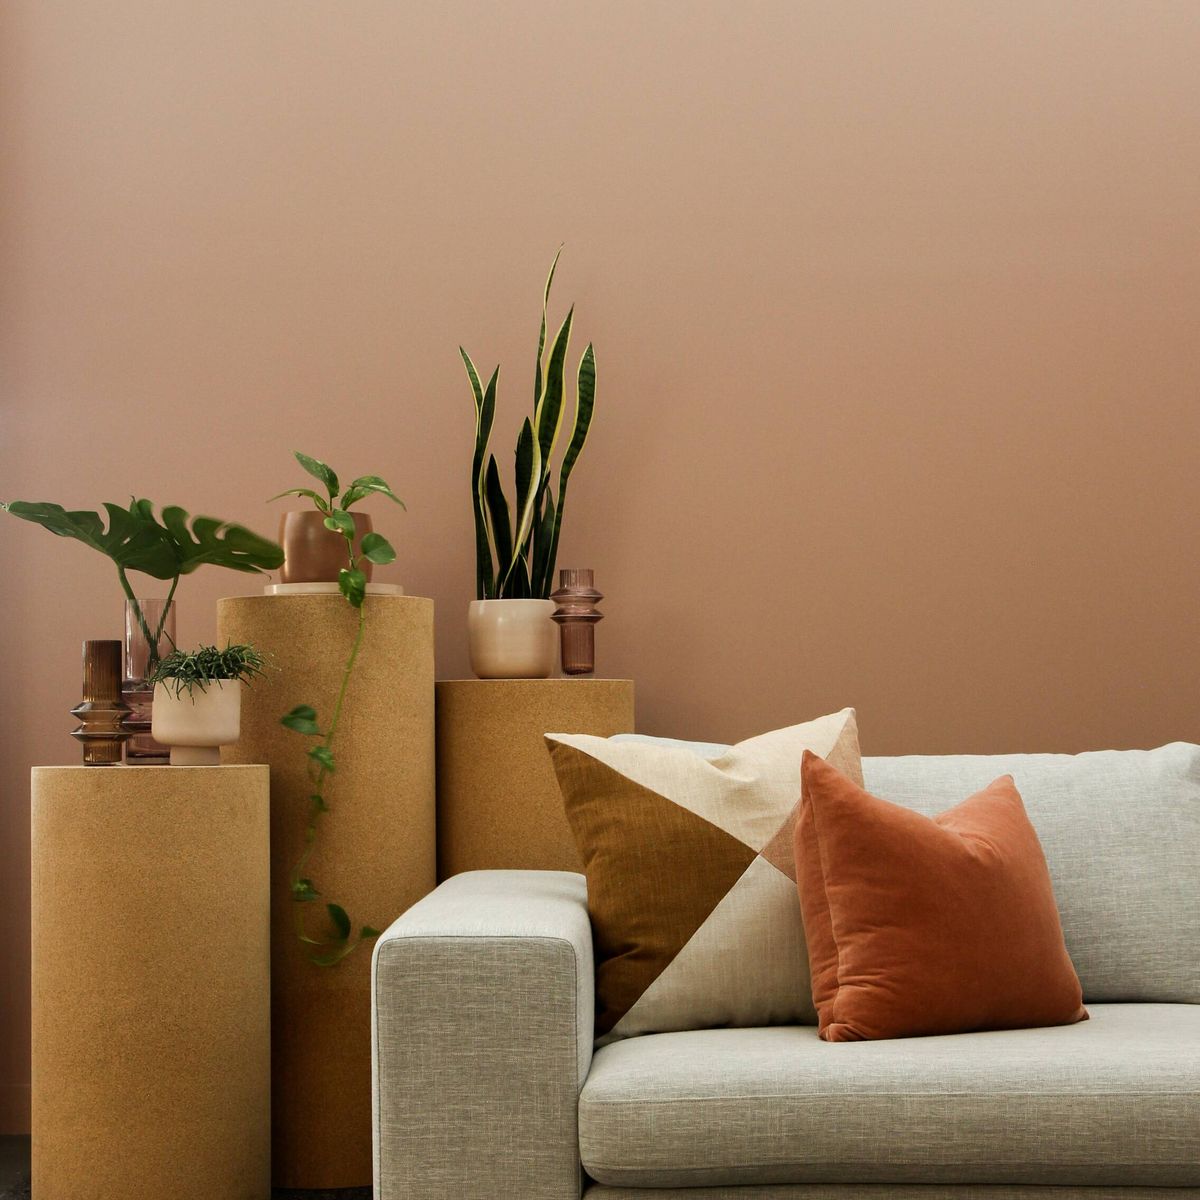 carolino Ventilación ocio Colores antiestrés para decorar un hogar más tranquilo